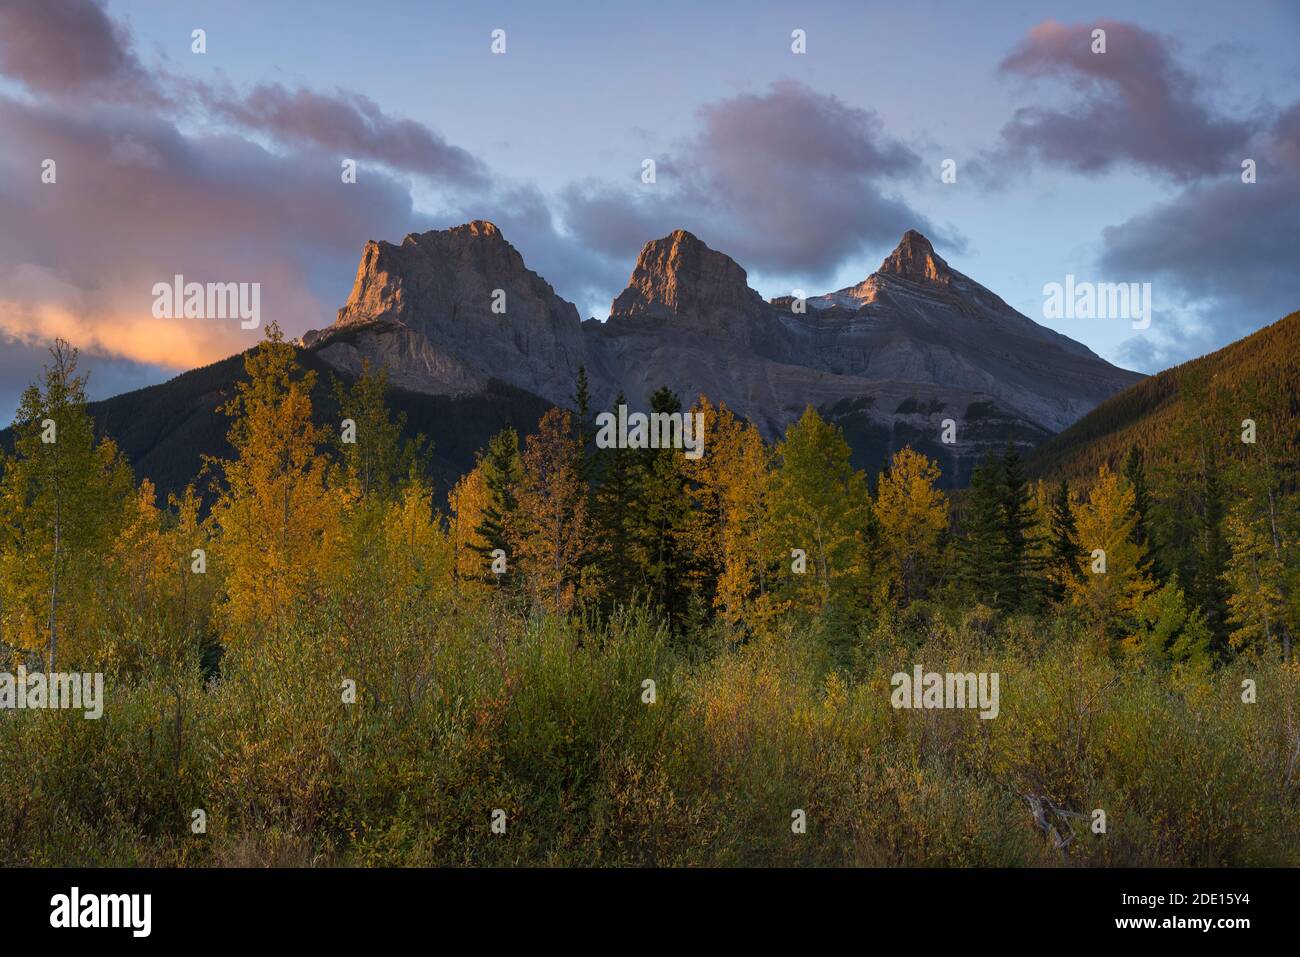 Lever de soleil en automne à Three Sisters Peaks près du parc national Banff, Canmore, Alberta, Rocheuses canadiennes, Canada, Amérique du Nord Banque D'Images